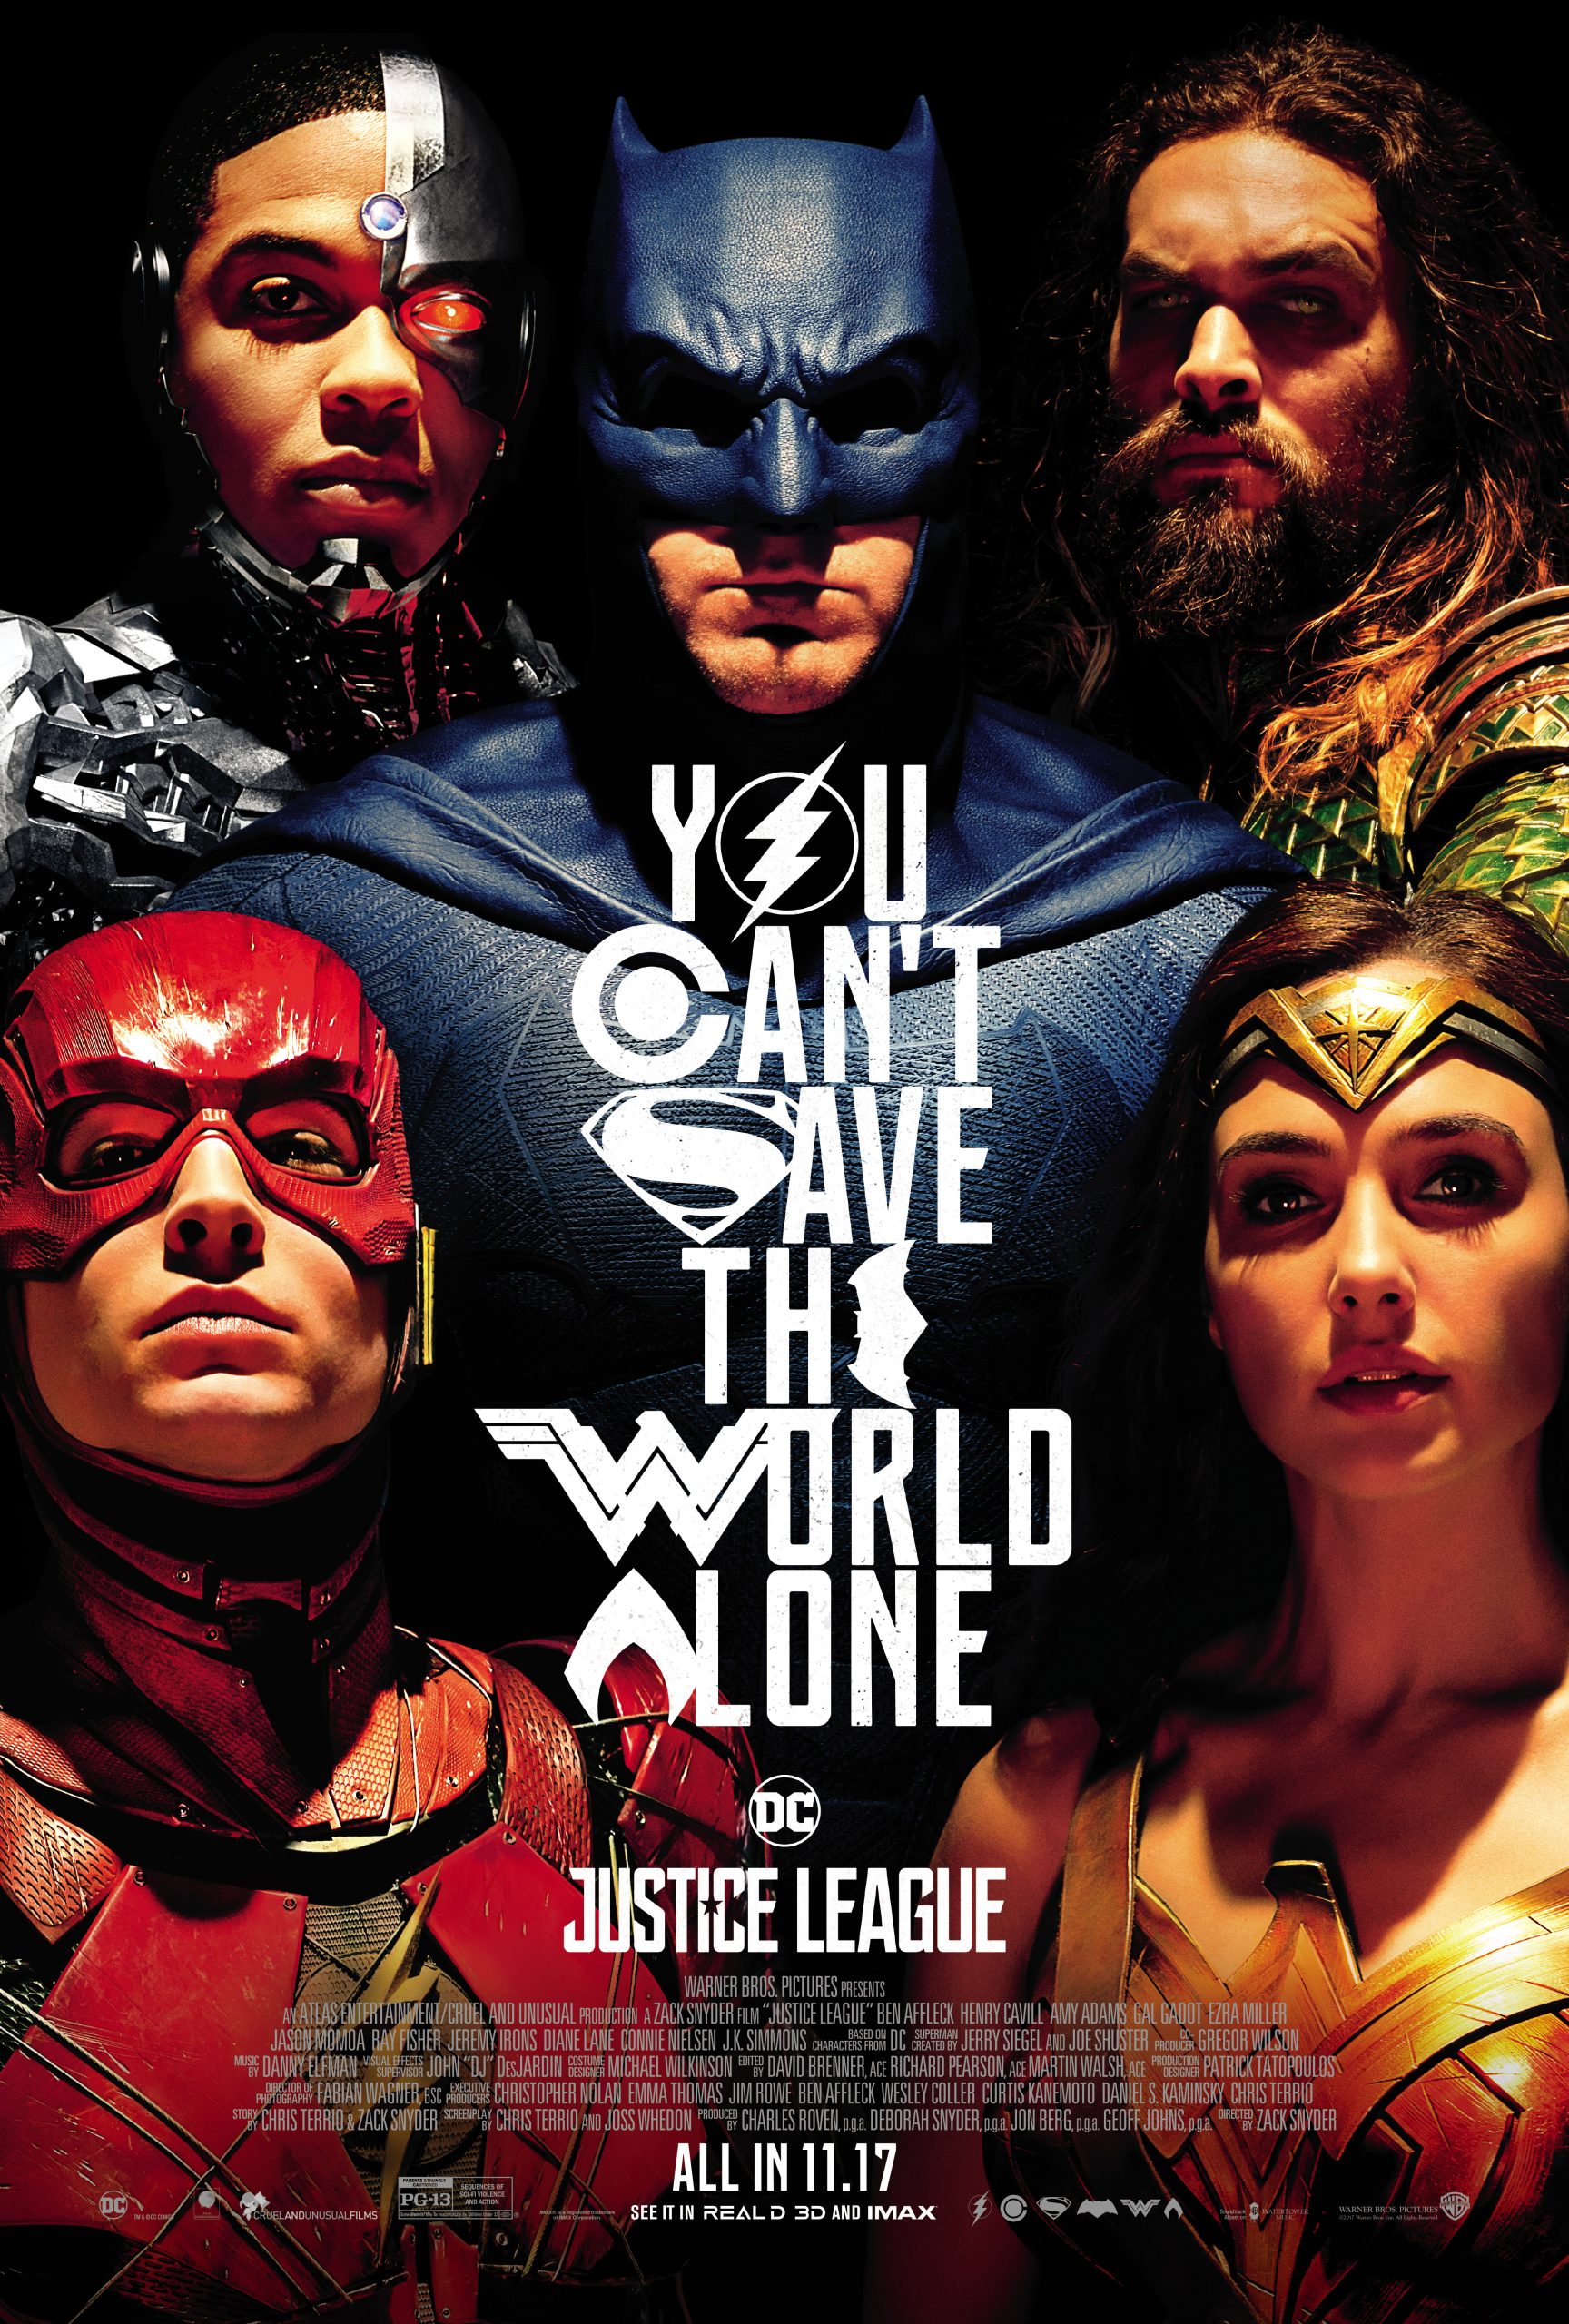 Justice League (2017) จัสติซ ลีก รวมพลฮีโร่พิทักษ์โลก Ben Affleck